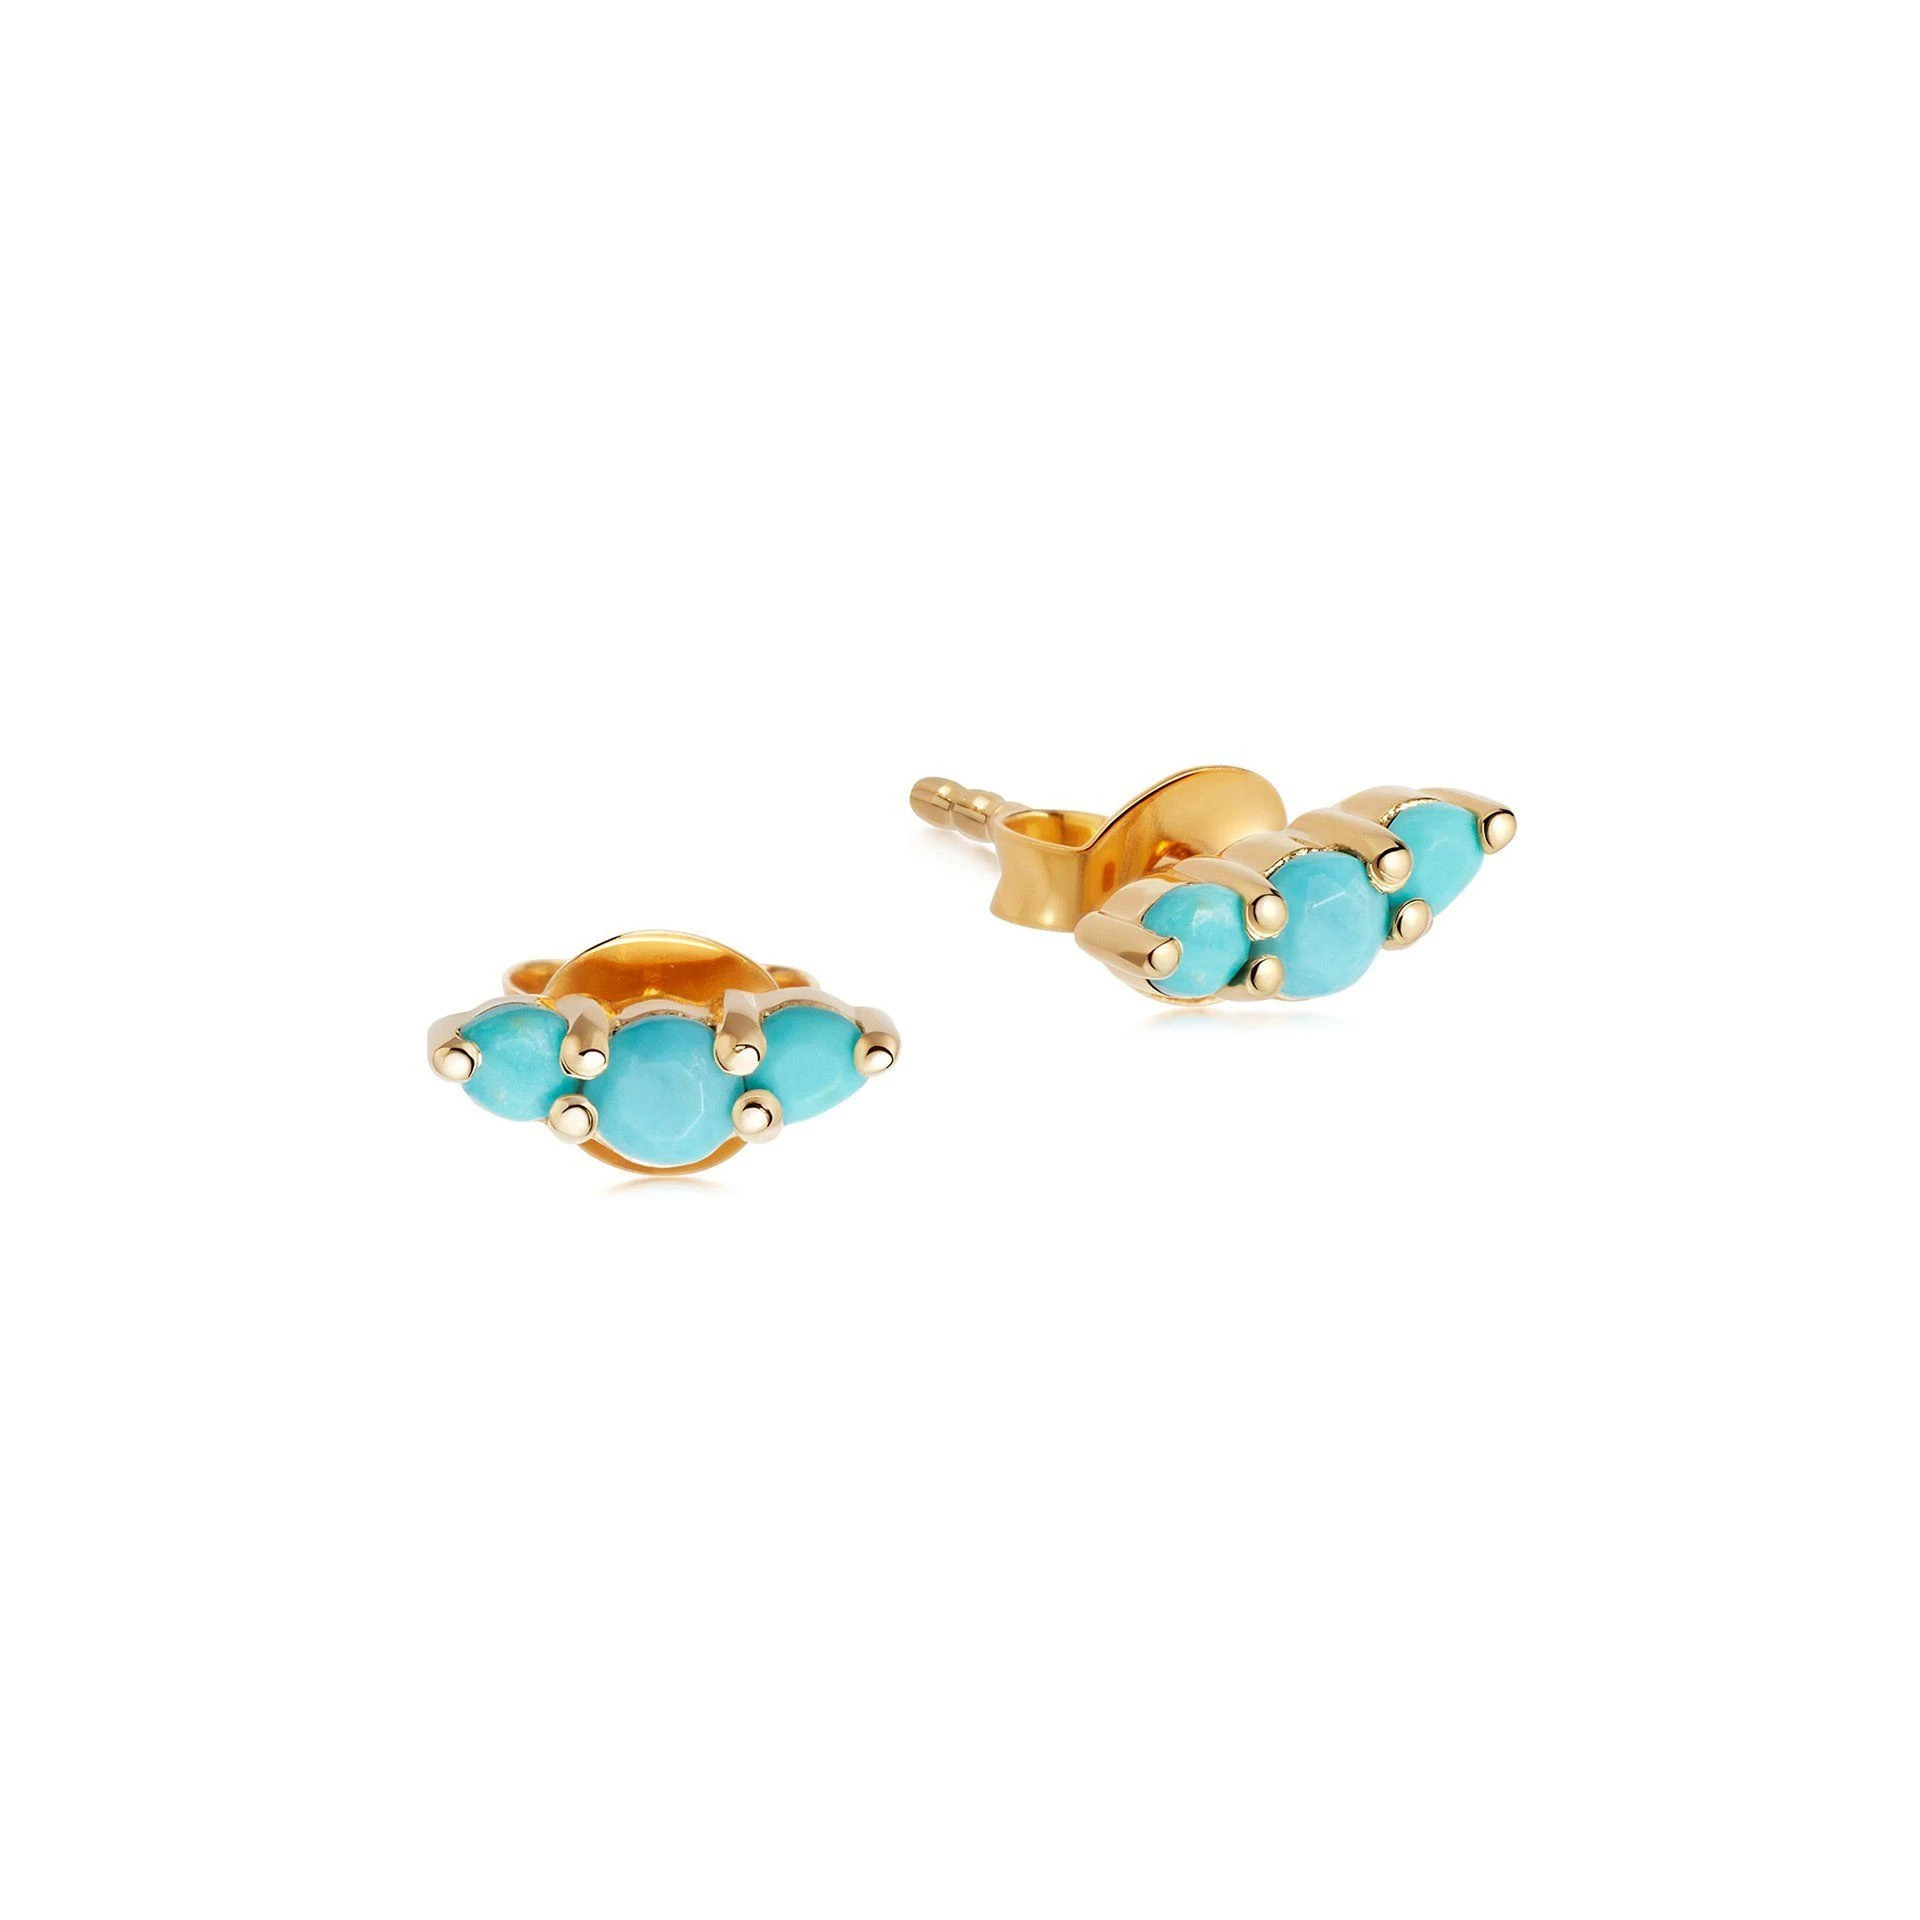 Ensemble de boucles d'oreilles OEM, vente en gros, bijoux OEM/ODM en vermeil or 18 carats sur argent avec pierres de magnésite turquoise